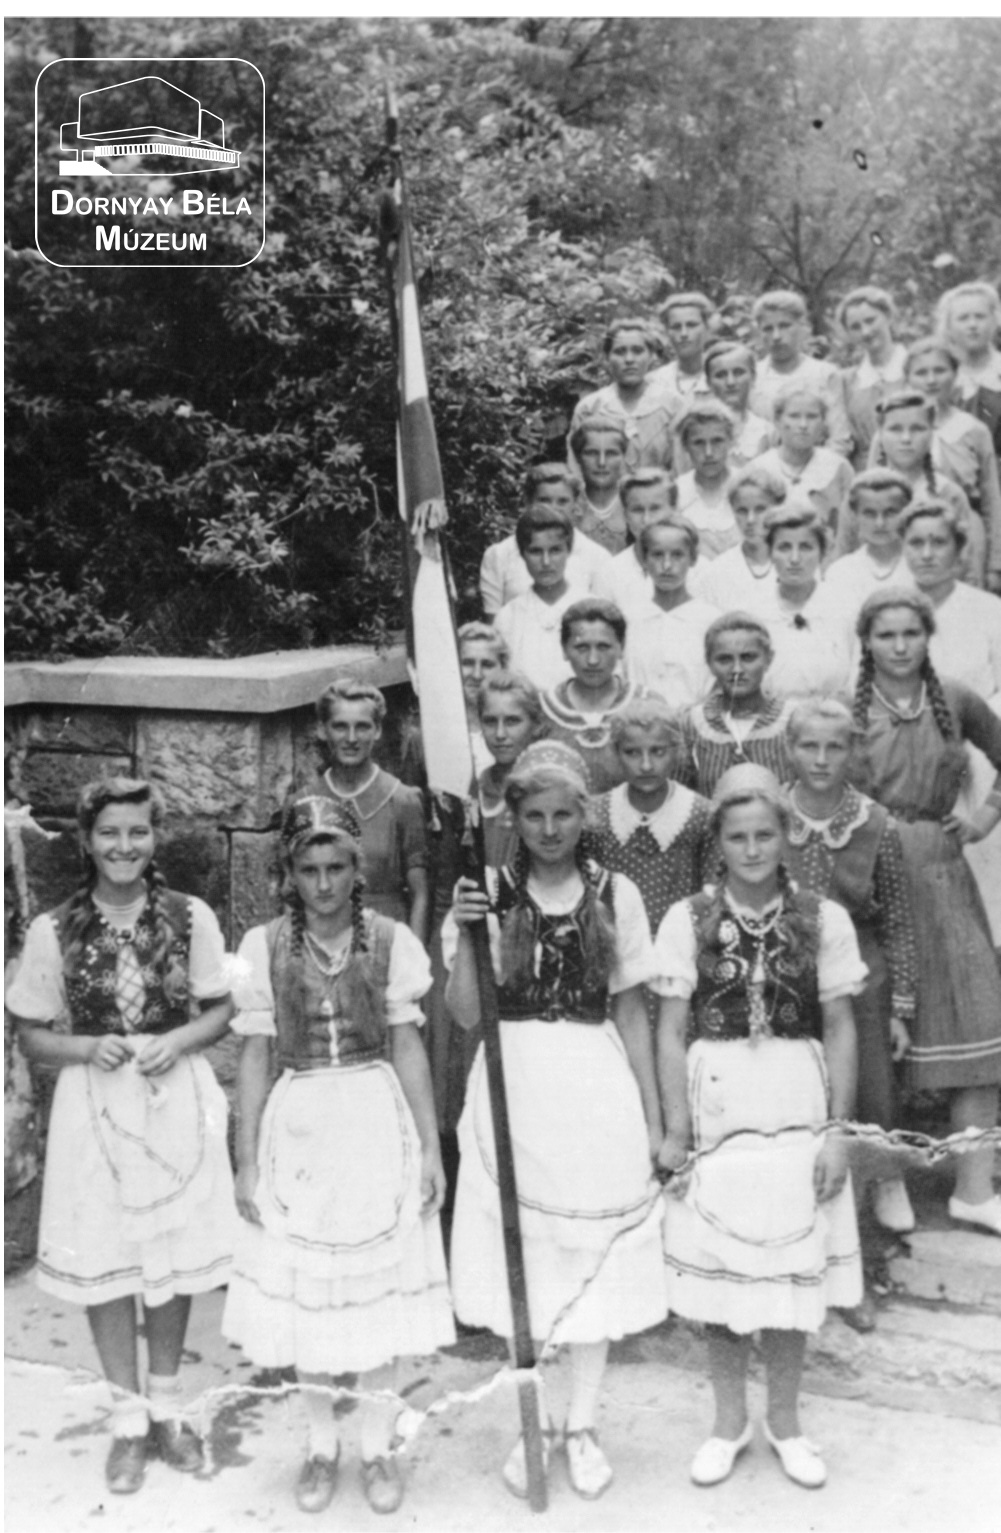 Karancsaljai MADISZ lányok Salgótarjánban 1945. május 1-én a MADISZ Székház előtt. (Volt Tobola - féle ház.) (Dornyay Béla Múzeum, Salgótarján CC BY-NC-SA)